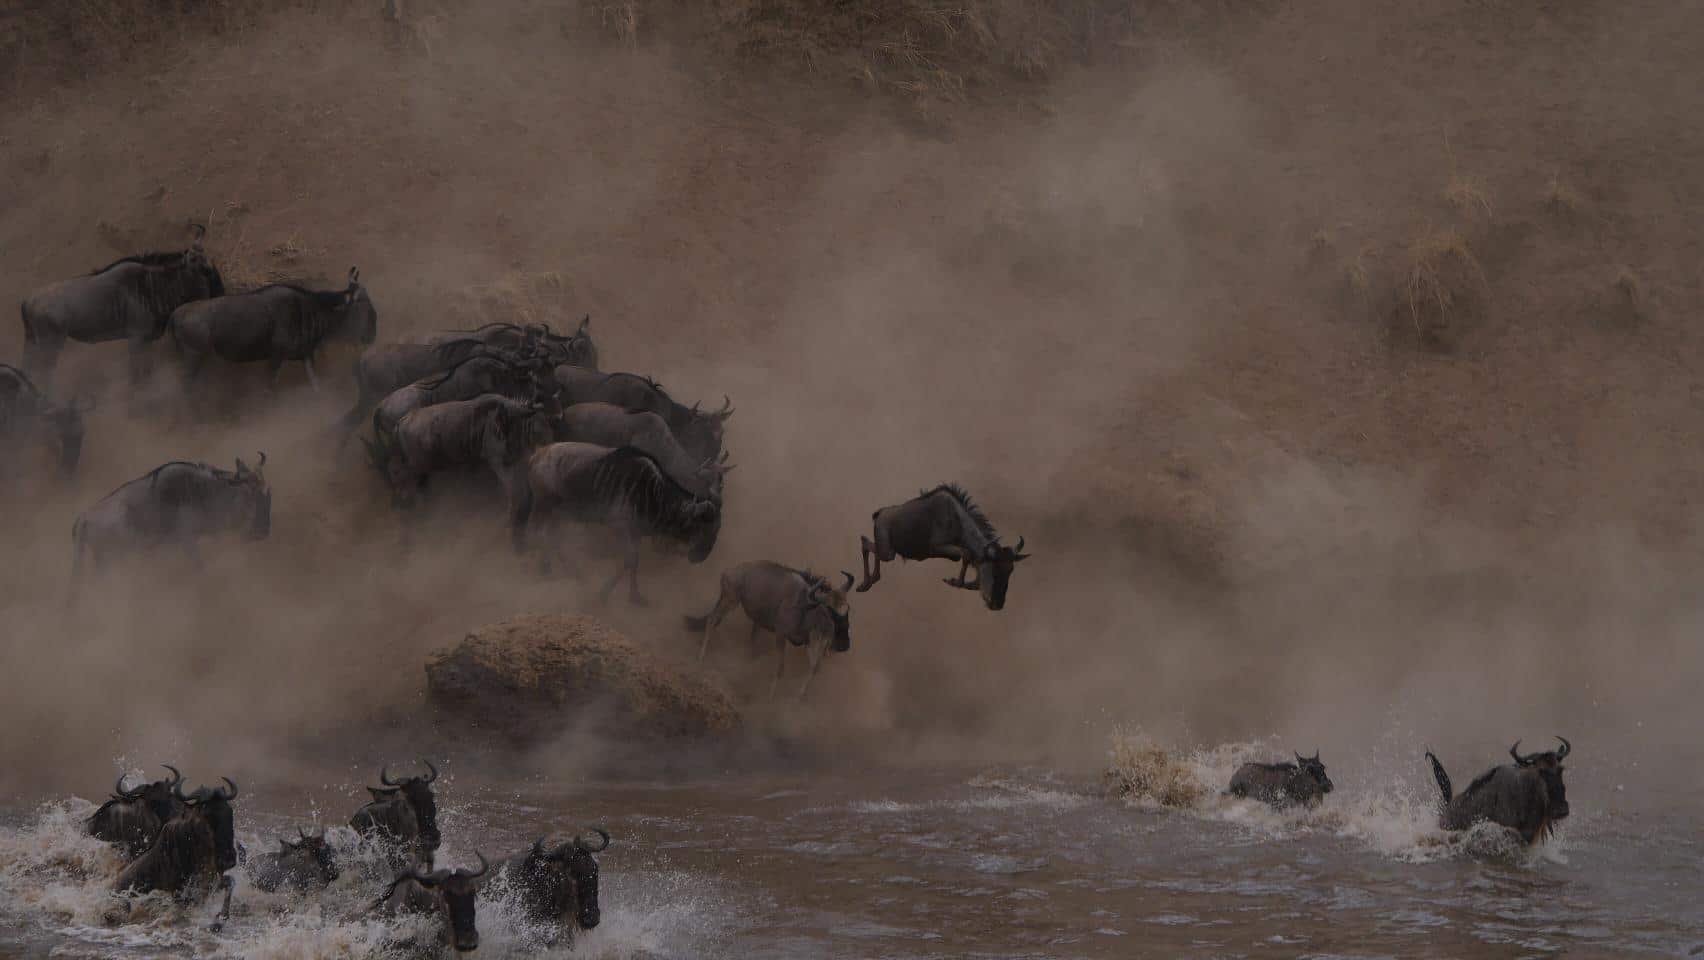 Tijdens een safari in Tanzania op zoek naar de grote migratie. Grote groepen gnoes die de Mara rivier inspringen en op de voorgrond zwemmen. Veel stof en opspattend water. De grote trek van gnoes is een van de grootste hoogtepunten om mee te maken op je rondreis door Tanzania